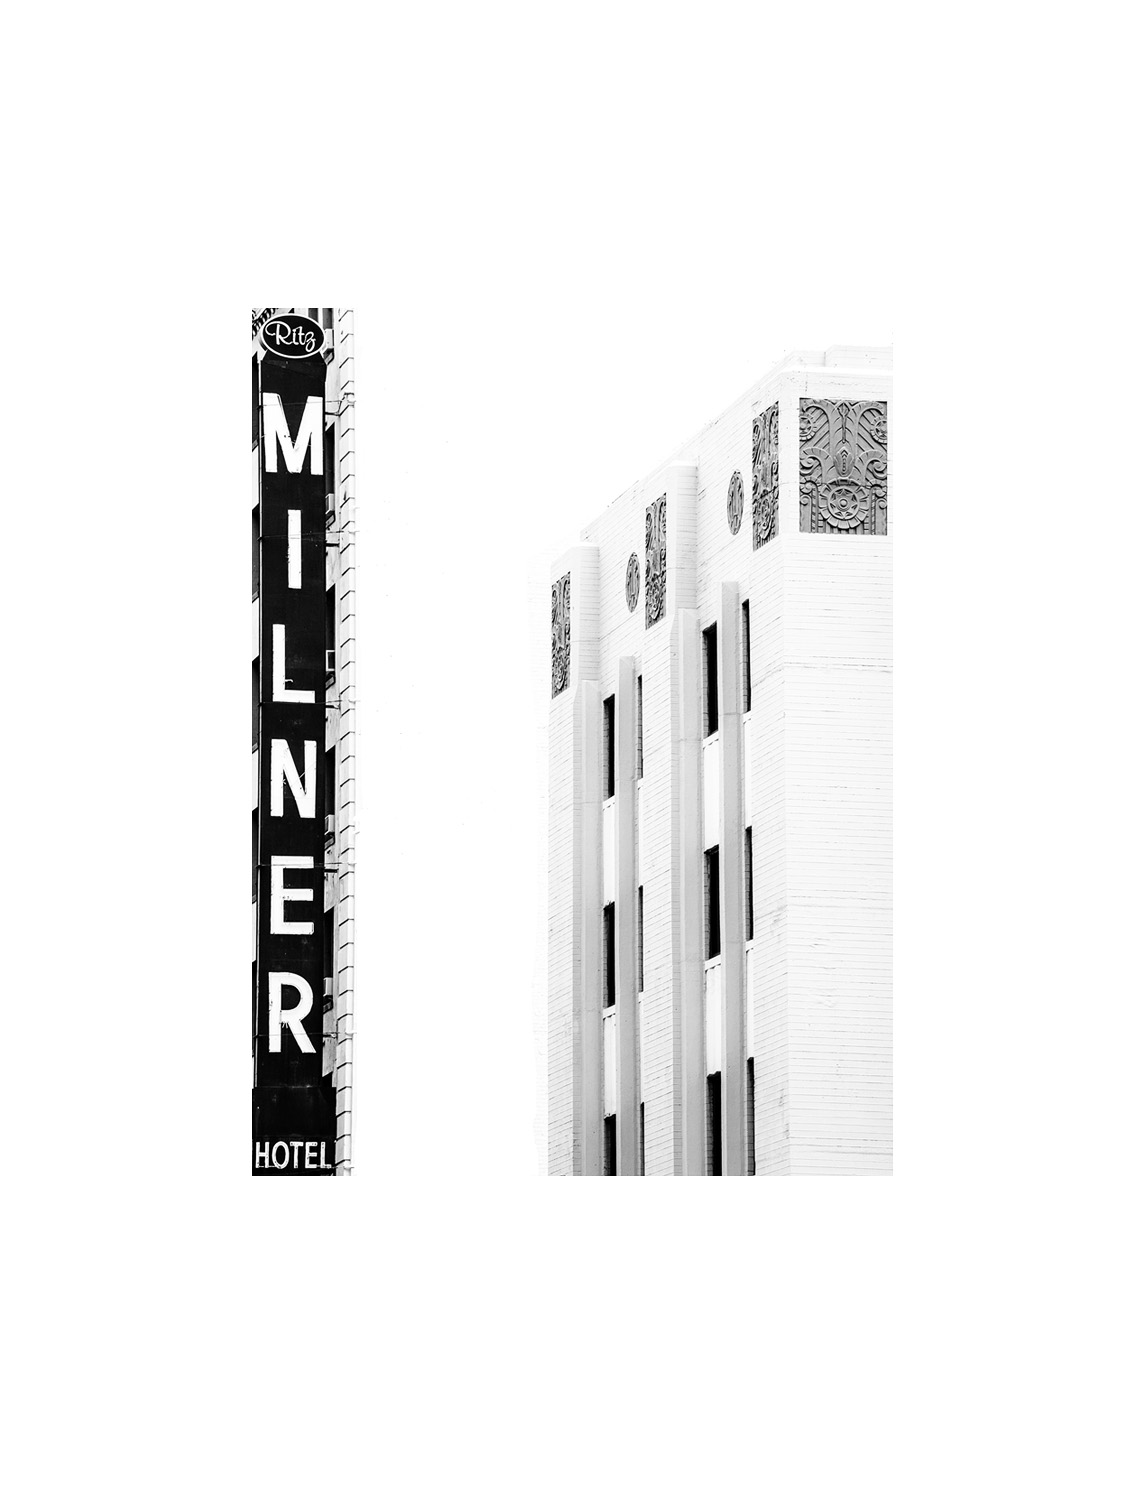 Milner Building